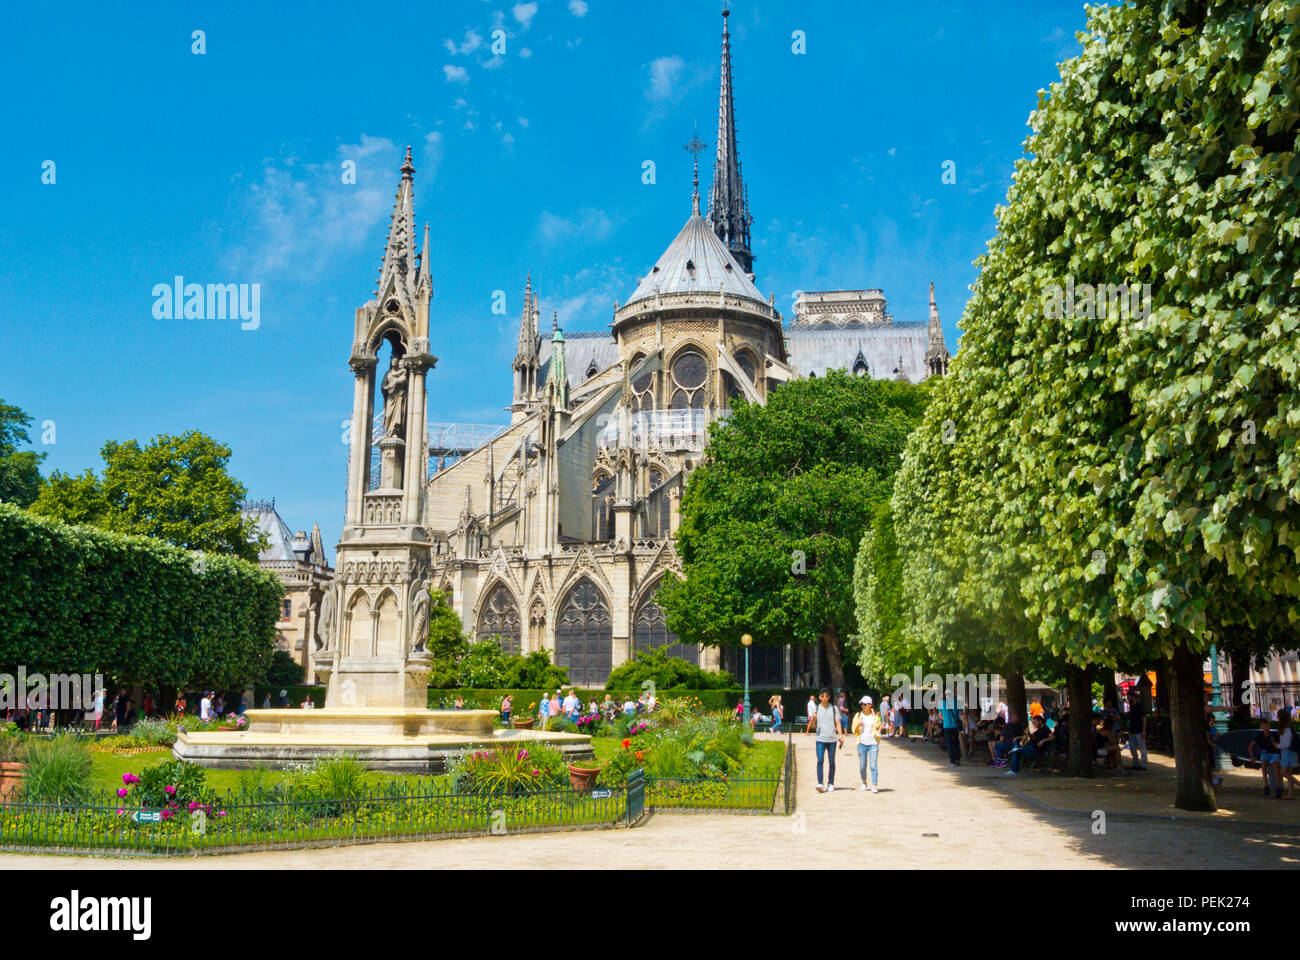 Cathedrale Notre-Dame de Paris, Square Jean XXIII, Ile de la Cite, Paris, France Stock Photo